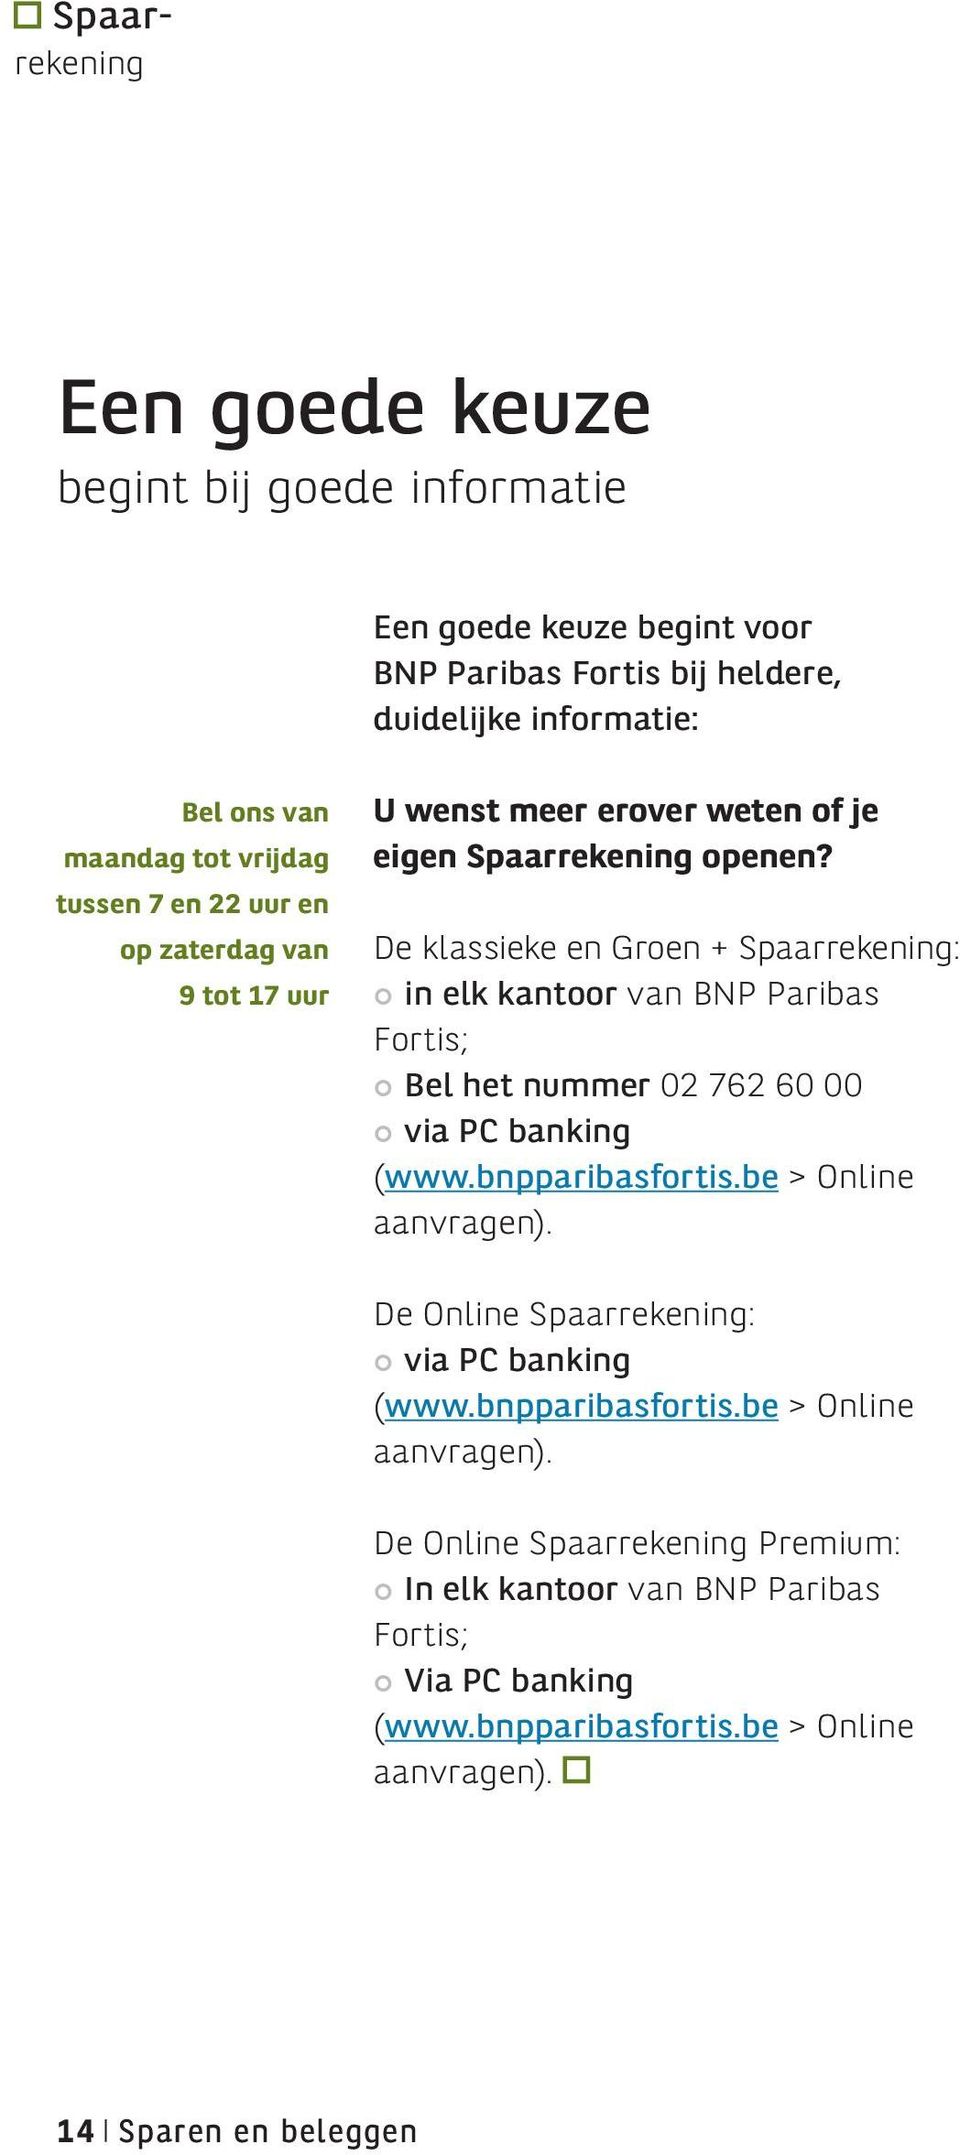 De klassieke en Groen + Spaarrekening: in elk kantoor van BNP Paribas Fortis; Bel het nummer 02 762 60 00 via PC banking (www.bnpparibasfortis.be > Online aanvragen).